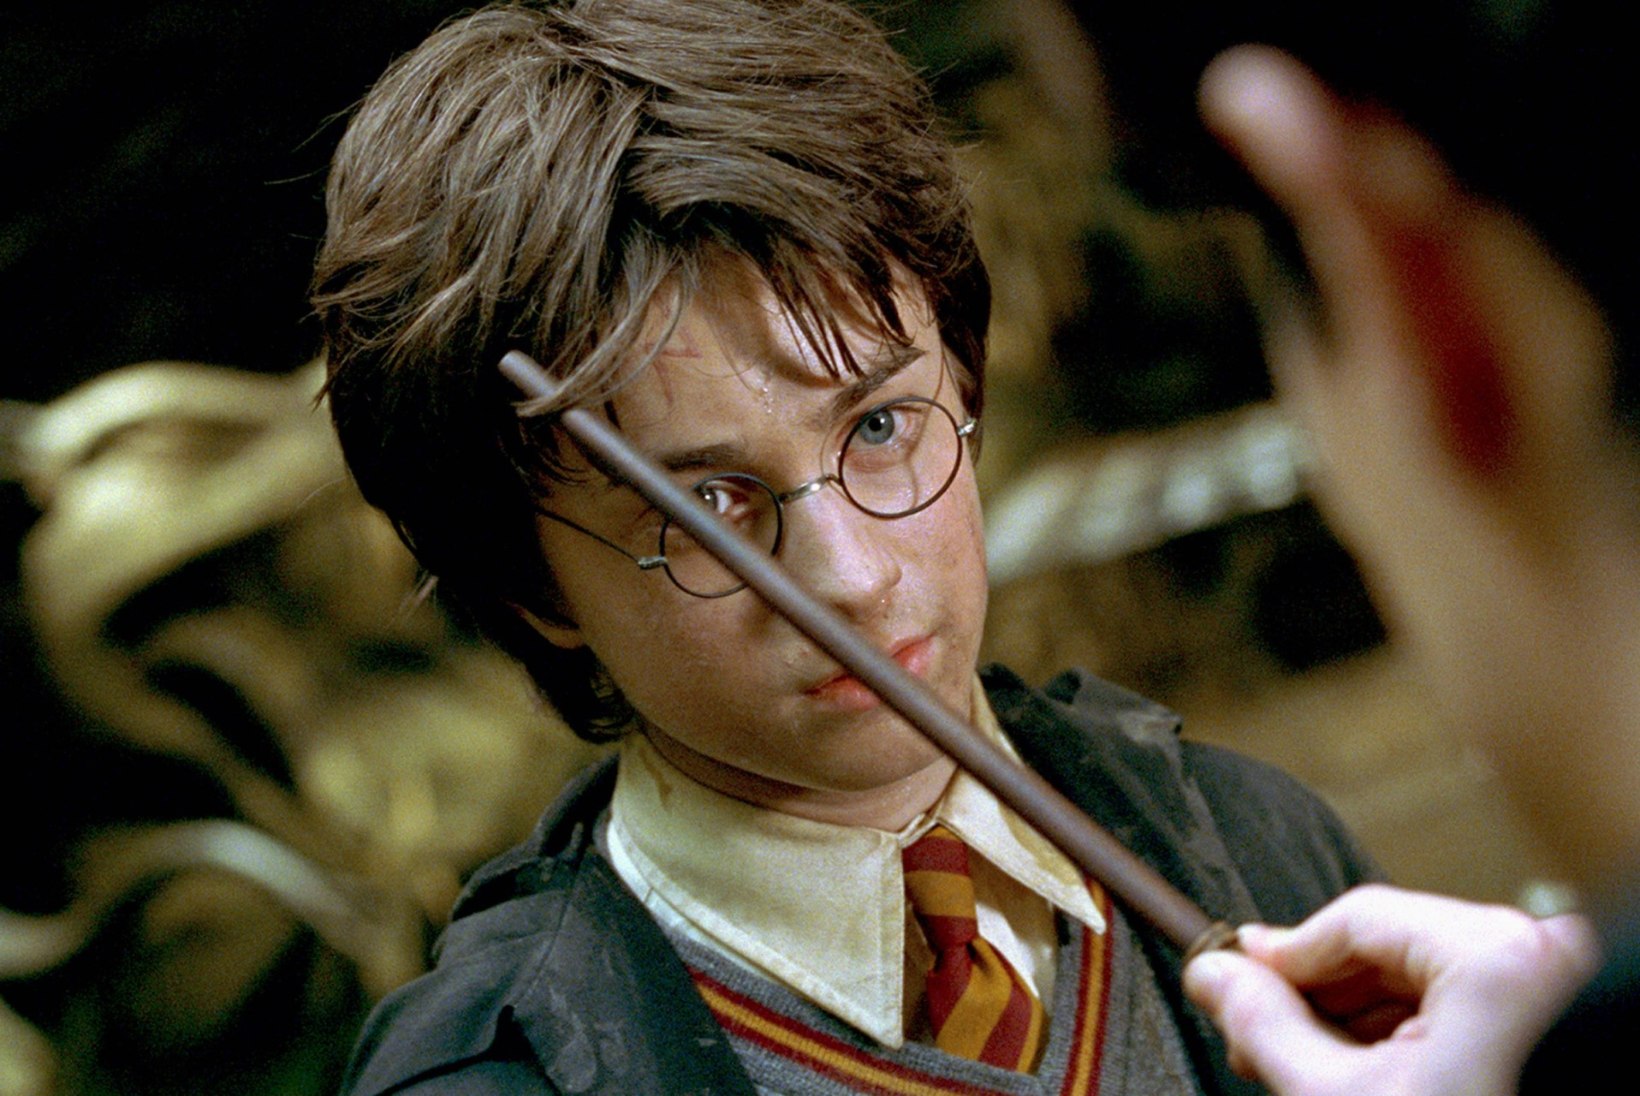 Harry Potterit kehastanud Daniel Radcliffe on kindel, et võluripoisi filmisari saab tulevikus uusversiooni